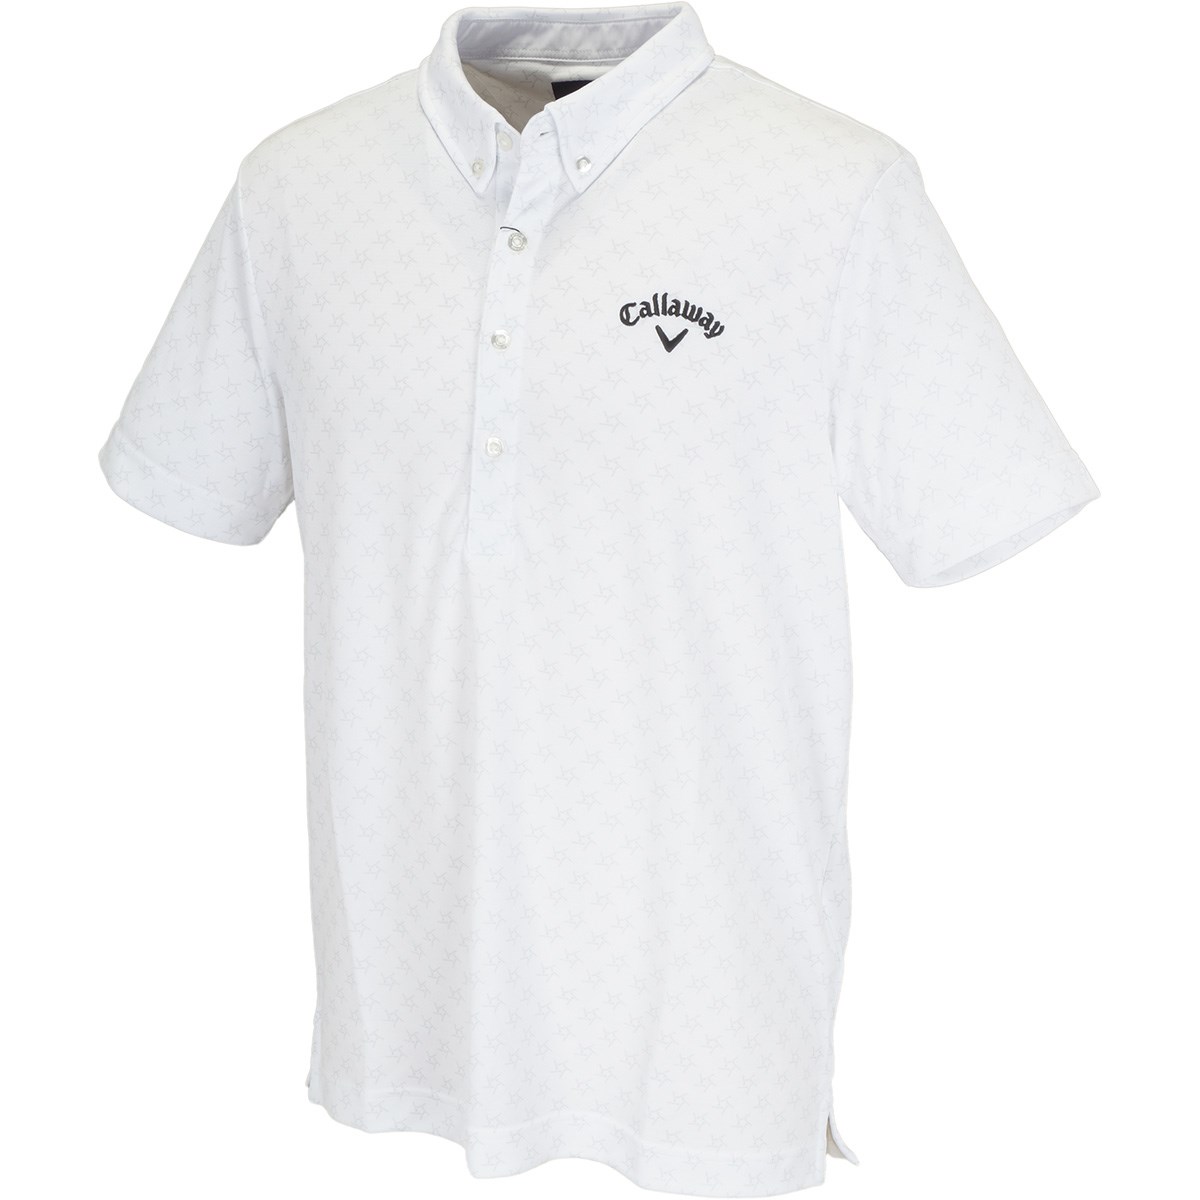 キャロウェイゴルフ(Callaway Golf) ボタンダウン 肌ドライPPクラブスター カラー半袖ポロシャツ 